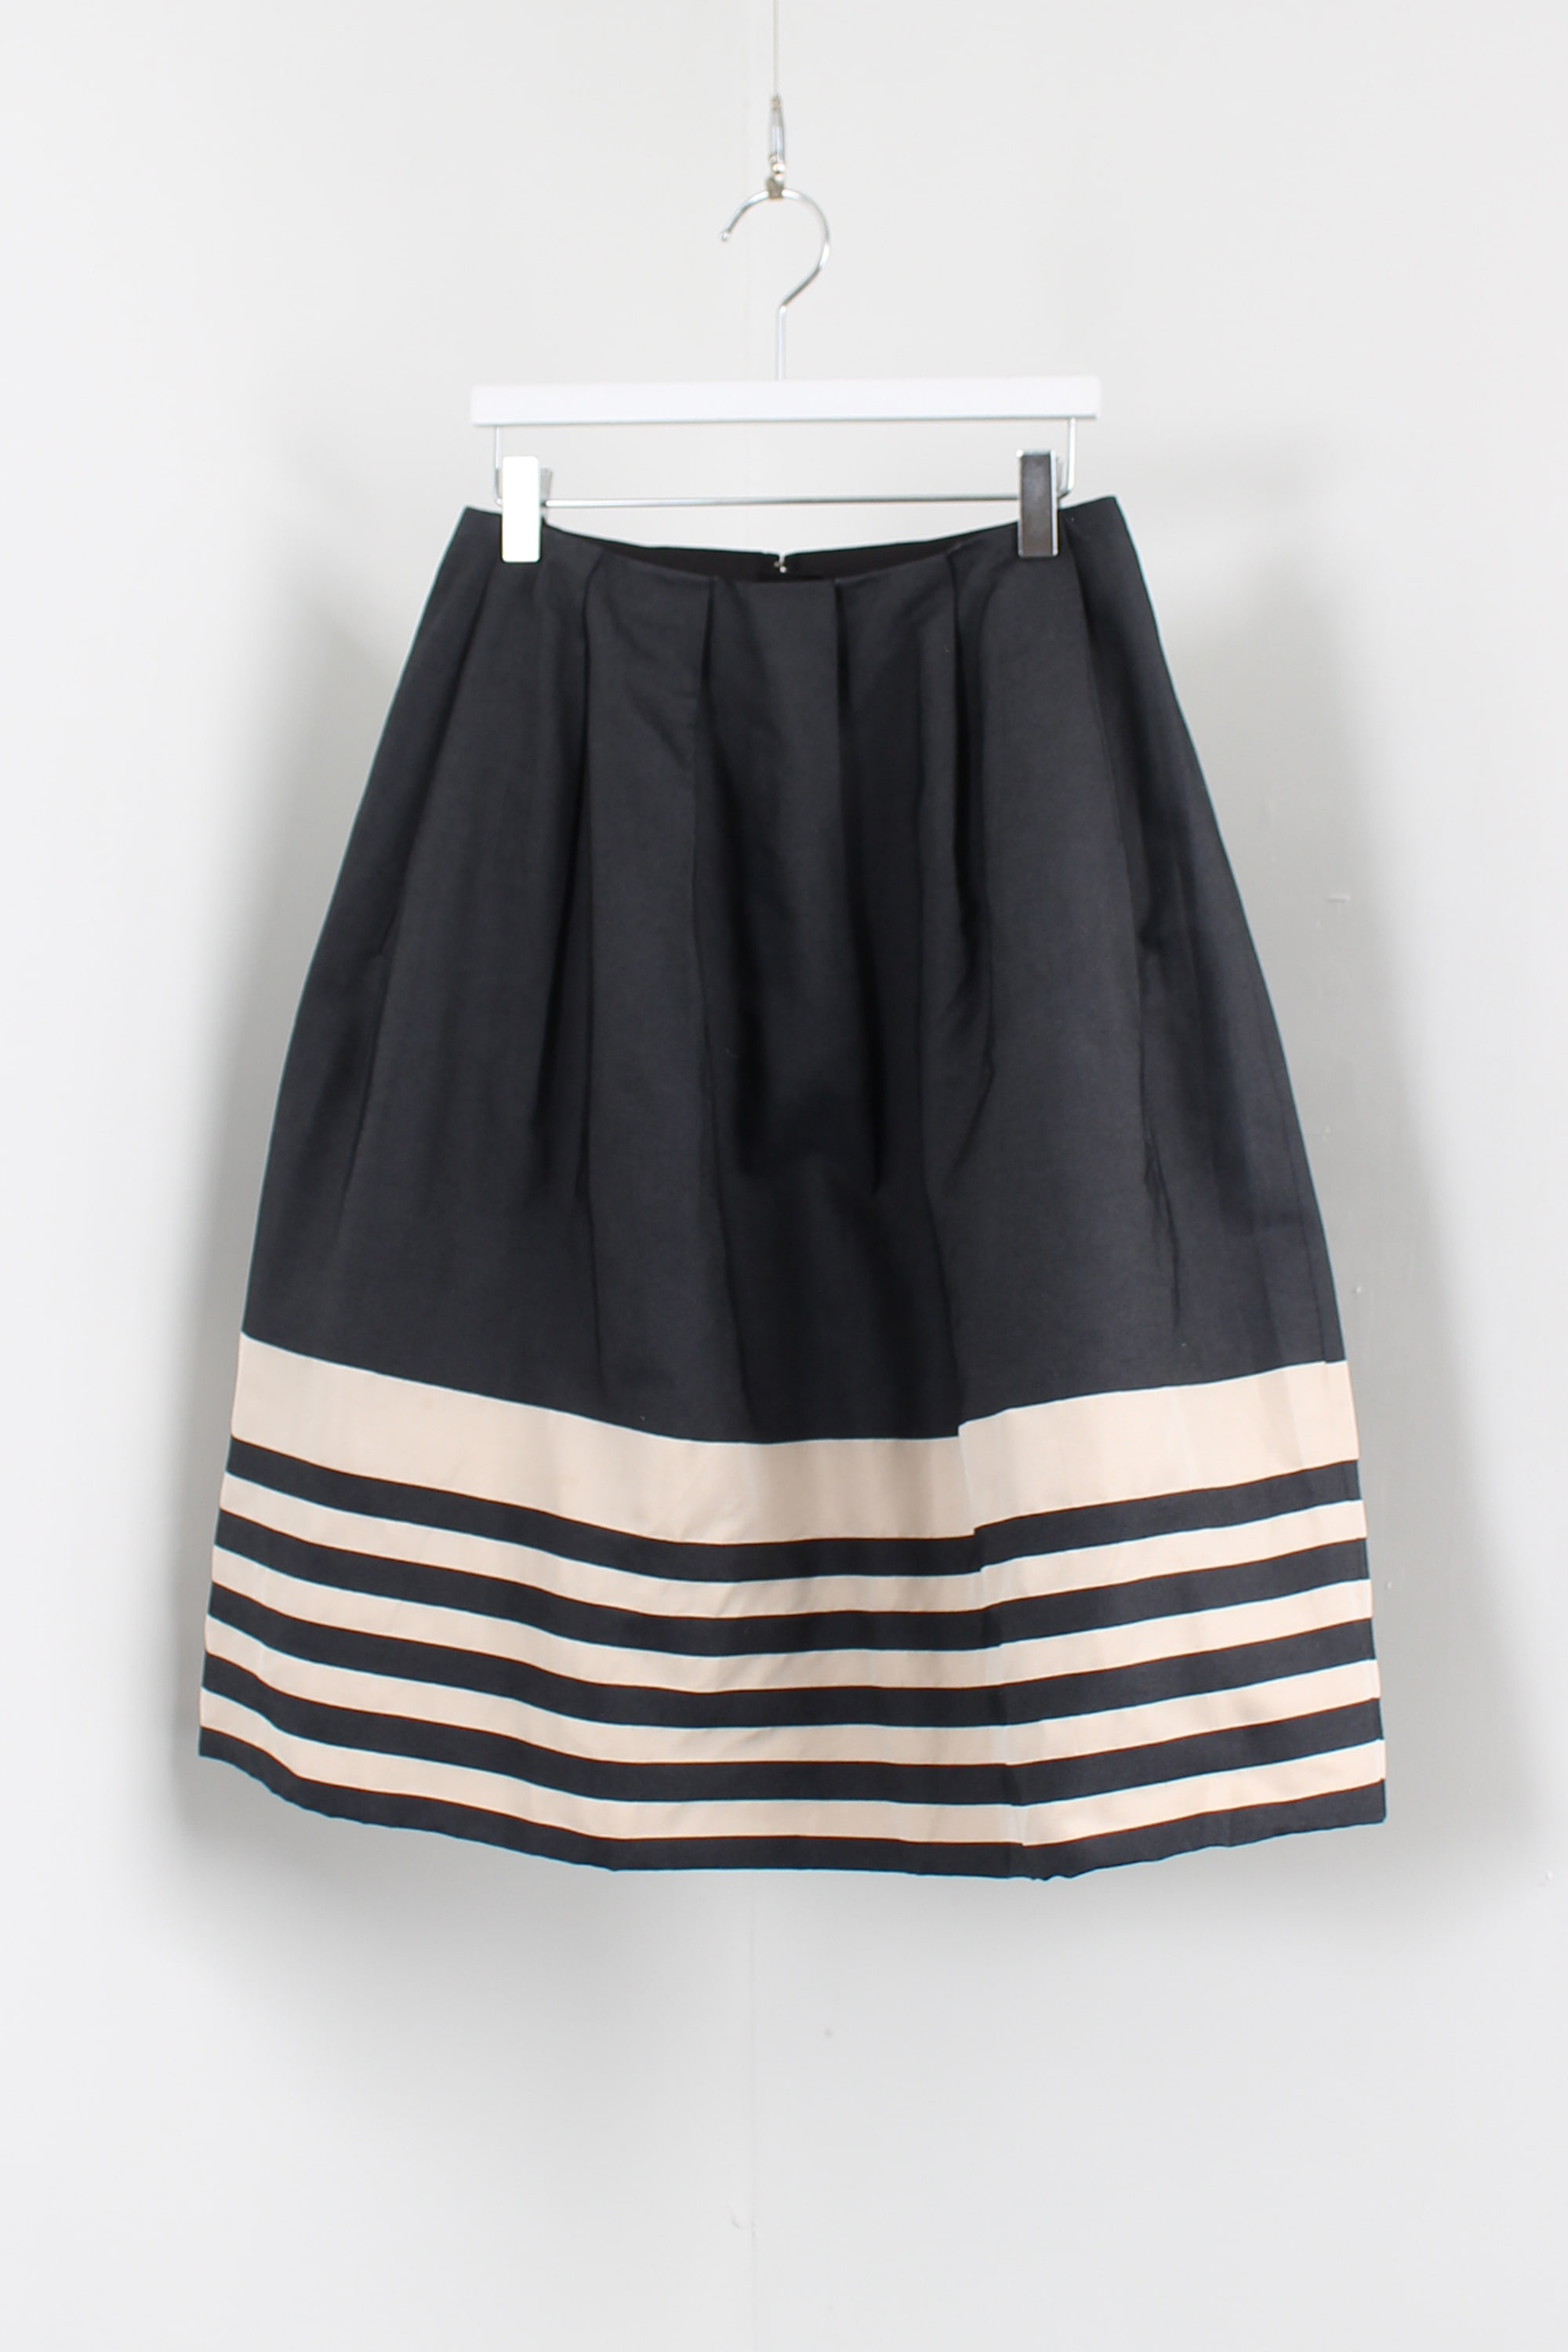 MARGARET HOWELL skirt